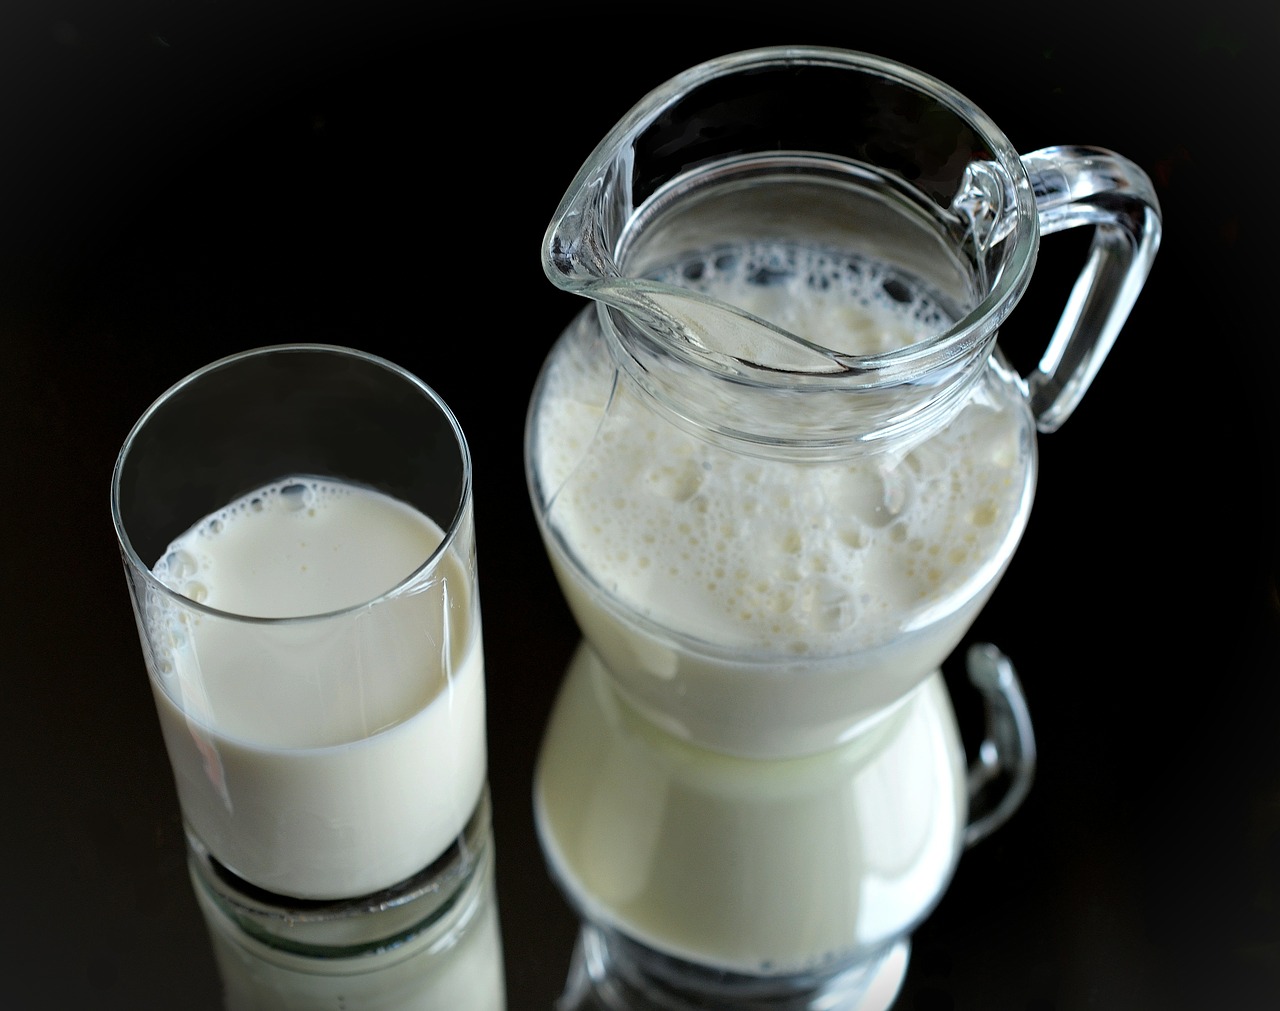 A Penny Market a magyar tej hiányával indokolja az importot